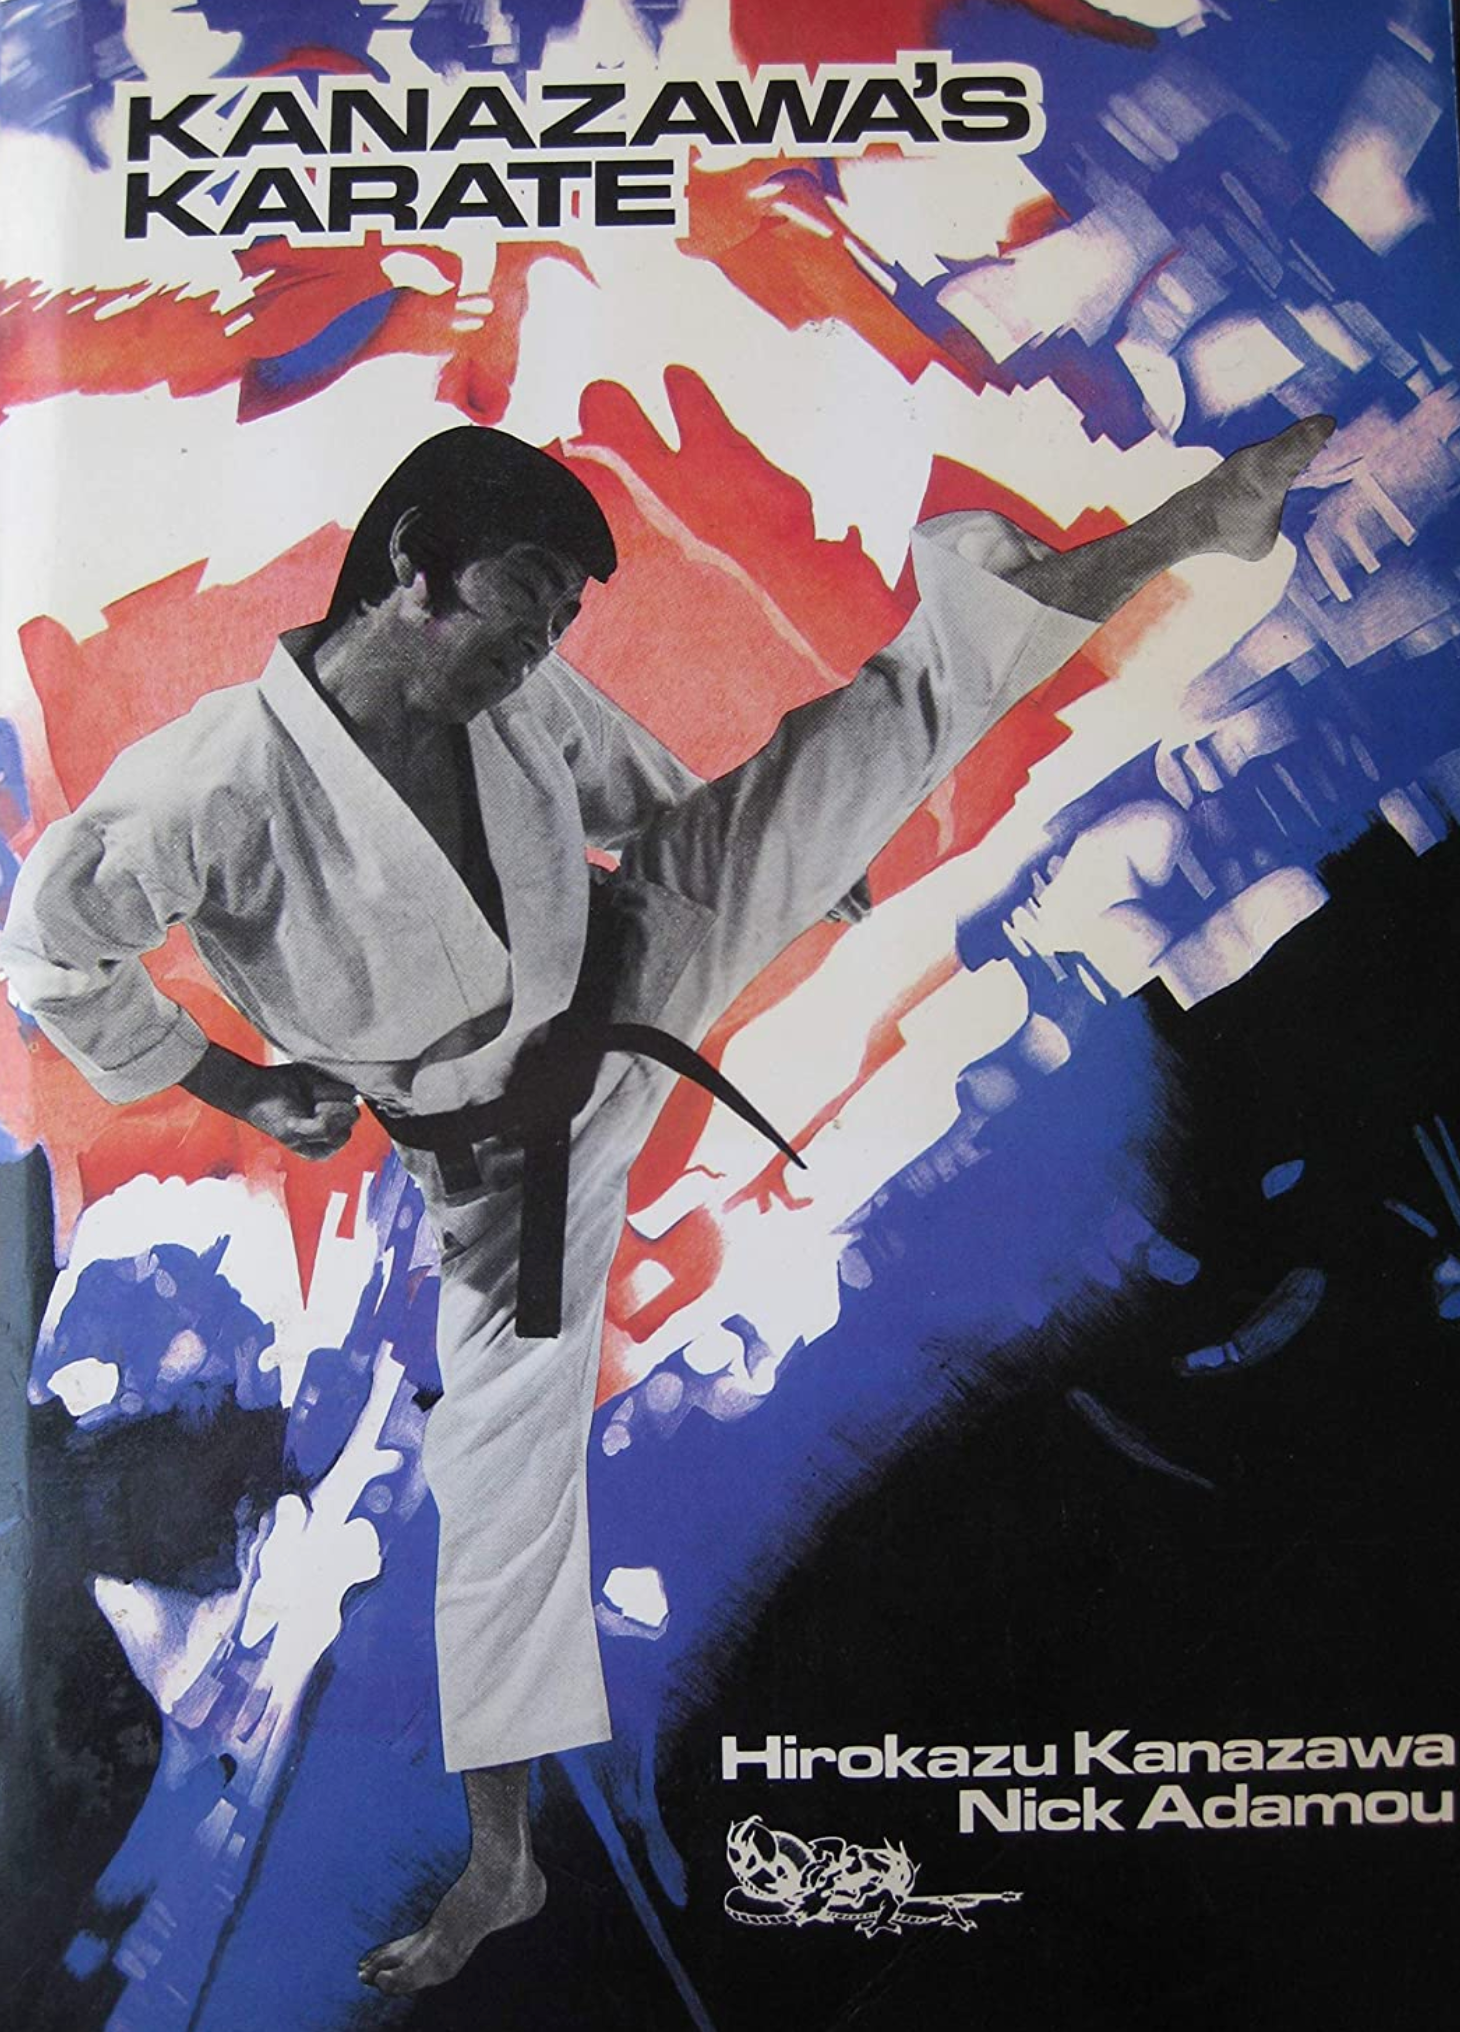 Libro de Karate de Kanazawa de Hirokazu Kanazawa (usado)